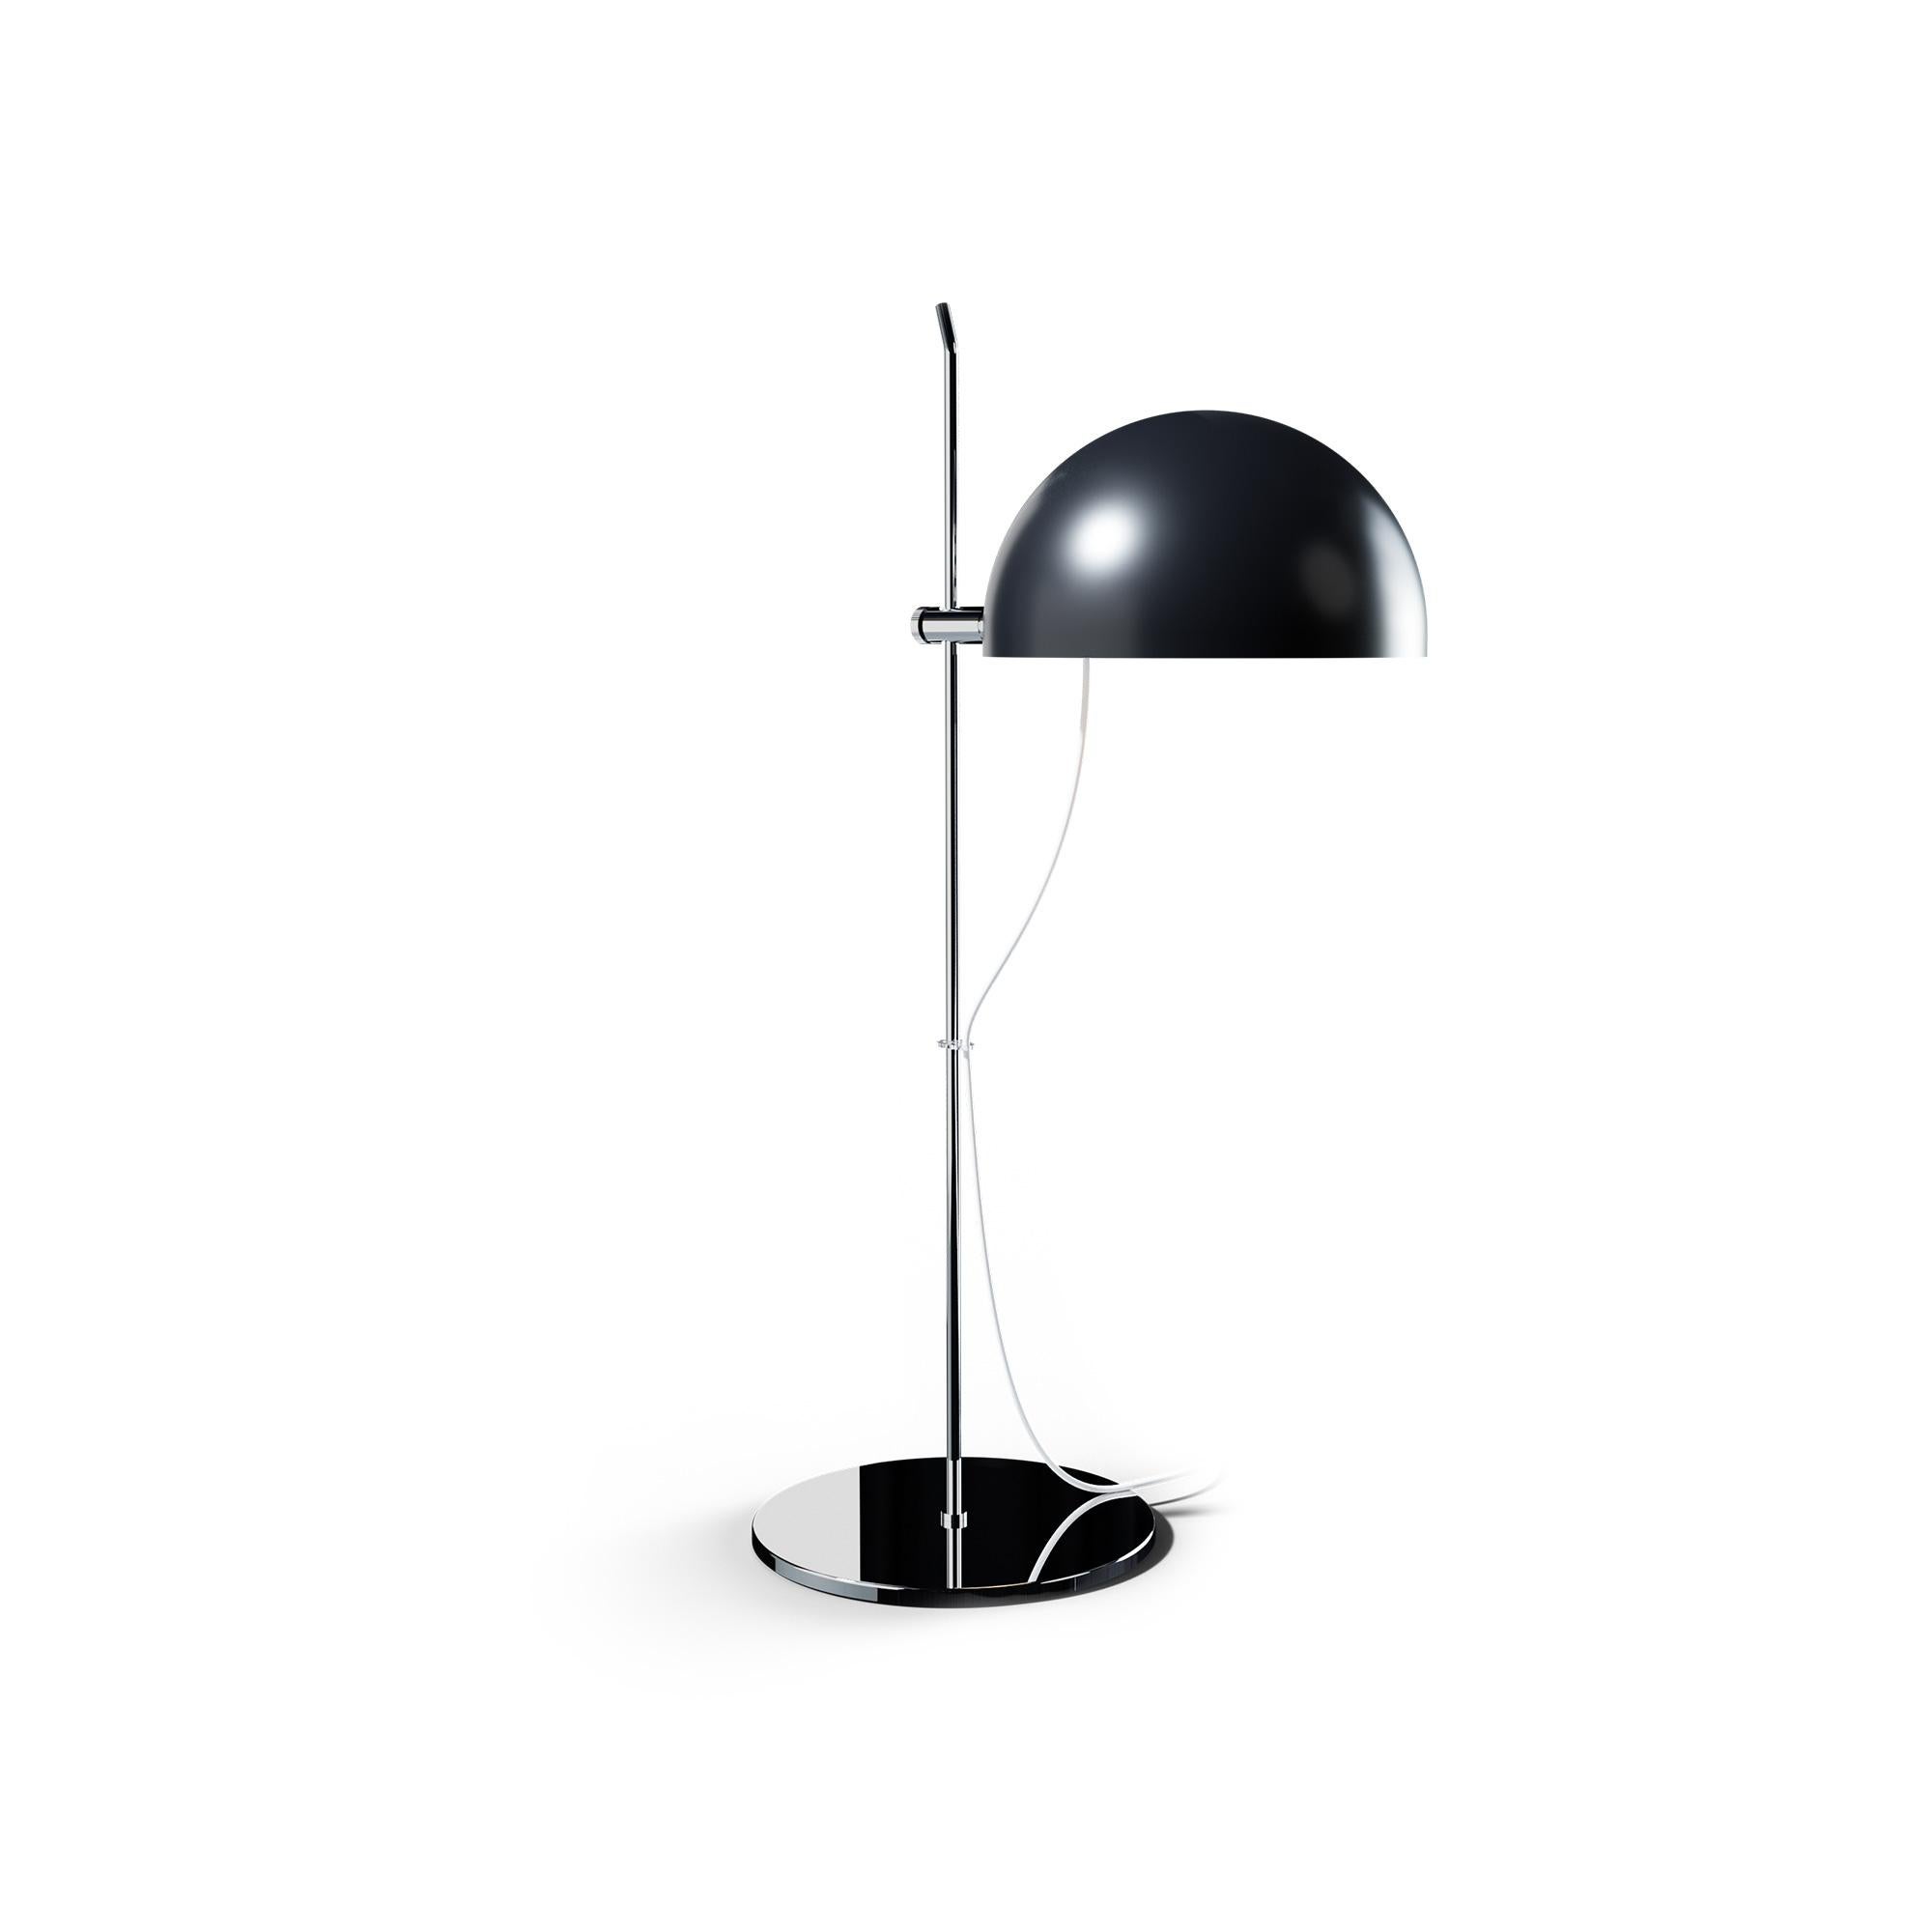 Alain Richard 'A22' Desk Lamp in Chrome for Disderot For Sale 6